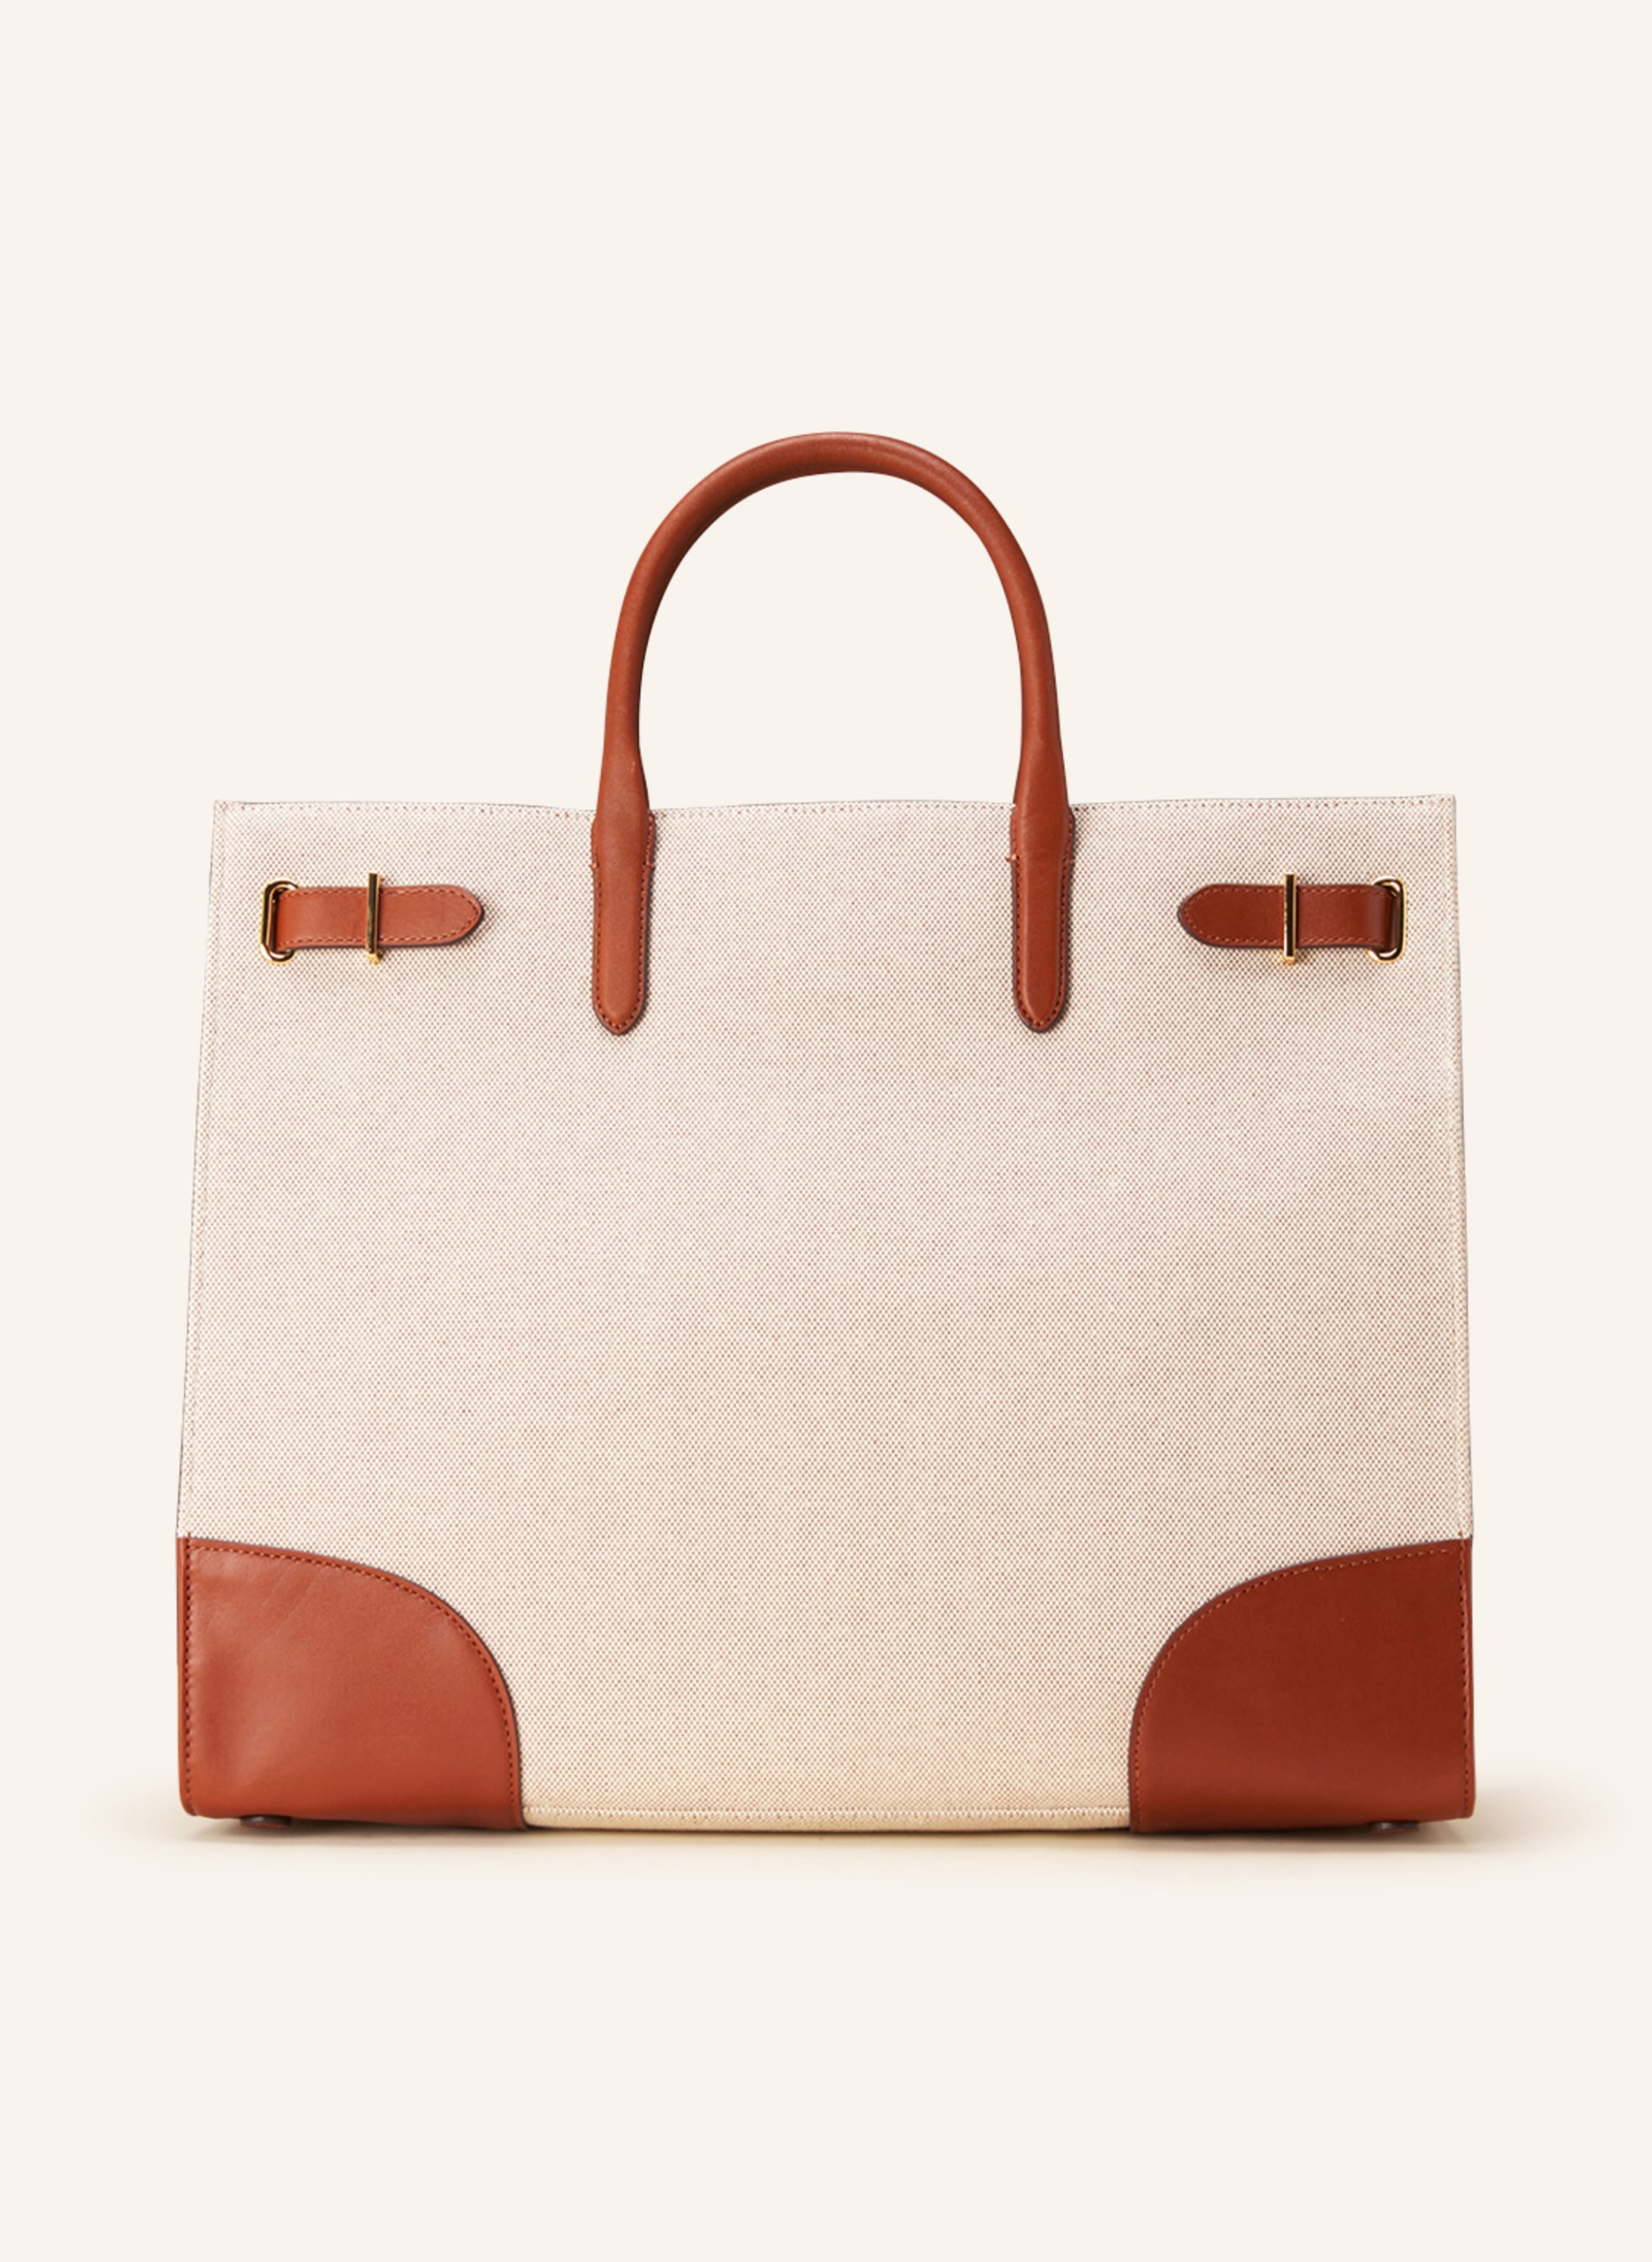 LAUREN RALPH LAUREN Handbag DEVYN LARGE in brown | Breuninger